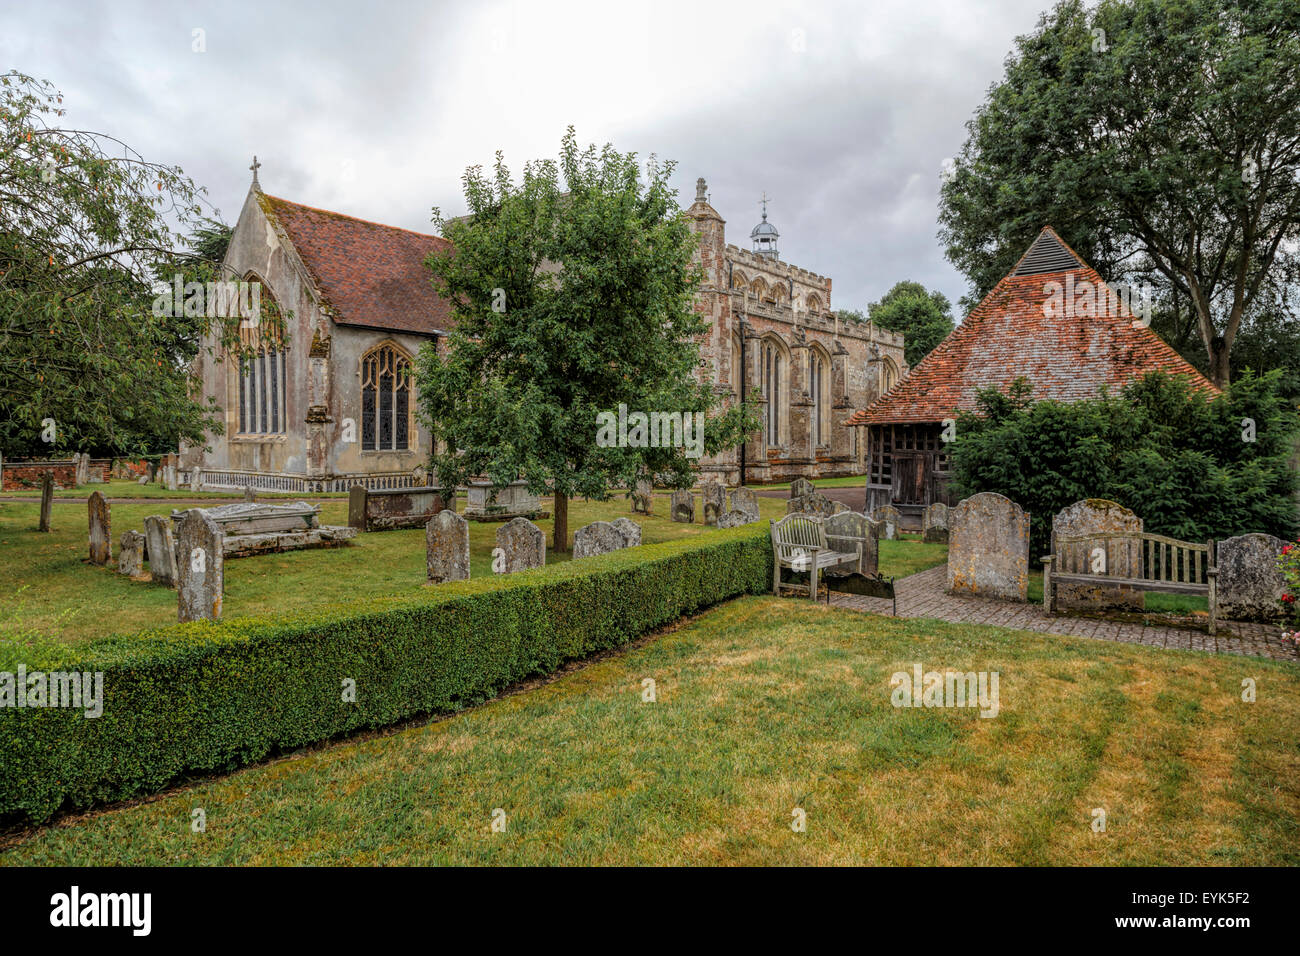 L'église St Mary avec l'ancienne bellcage ( sur la droite ), Orient Bergholt, dans le Suffolk, East Anglia, Angleterre, Grande-Bretagne, Royaume-Uni. Banque D'Images